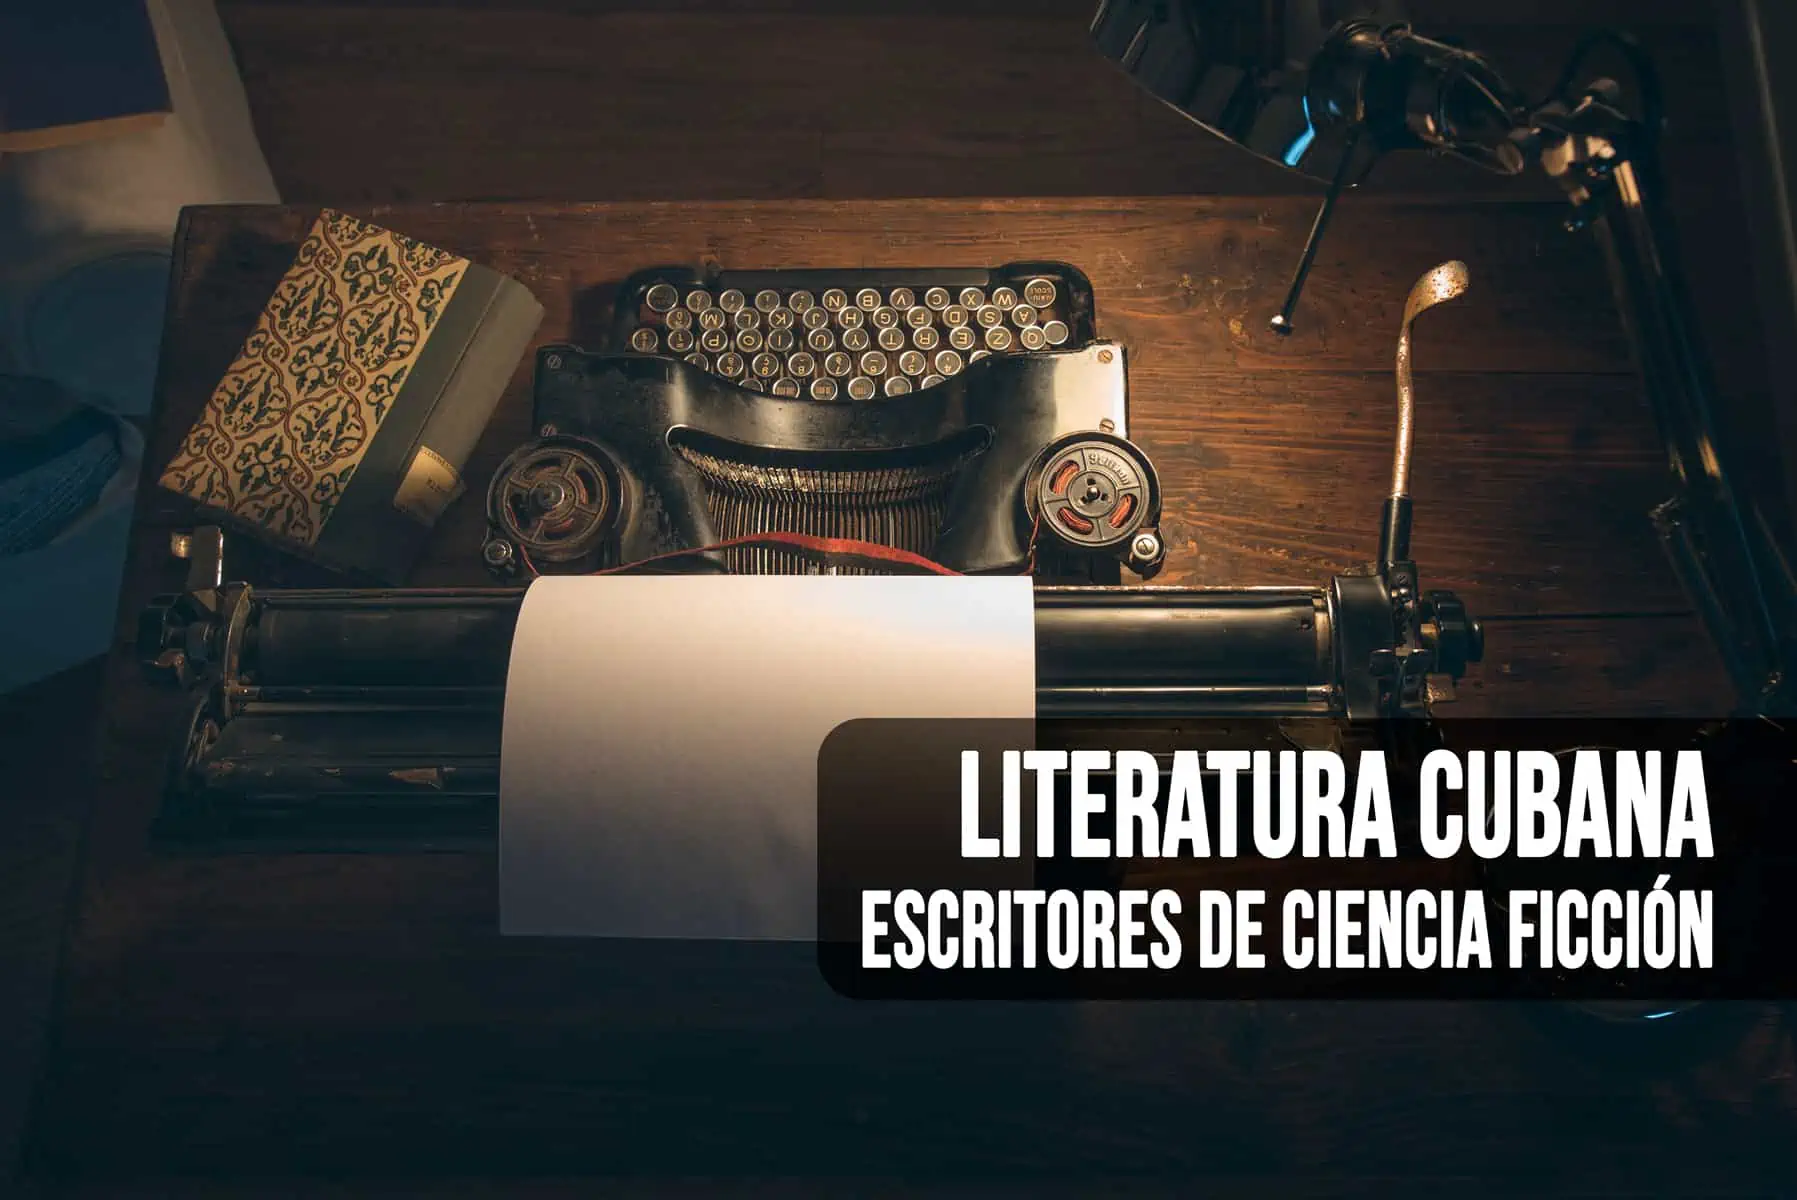 Escritores de Ciencia Ficción en la Literatura Cubana